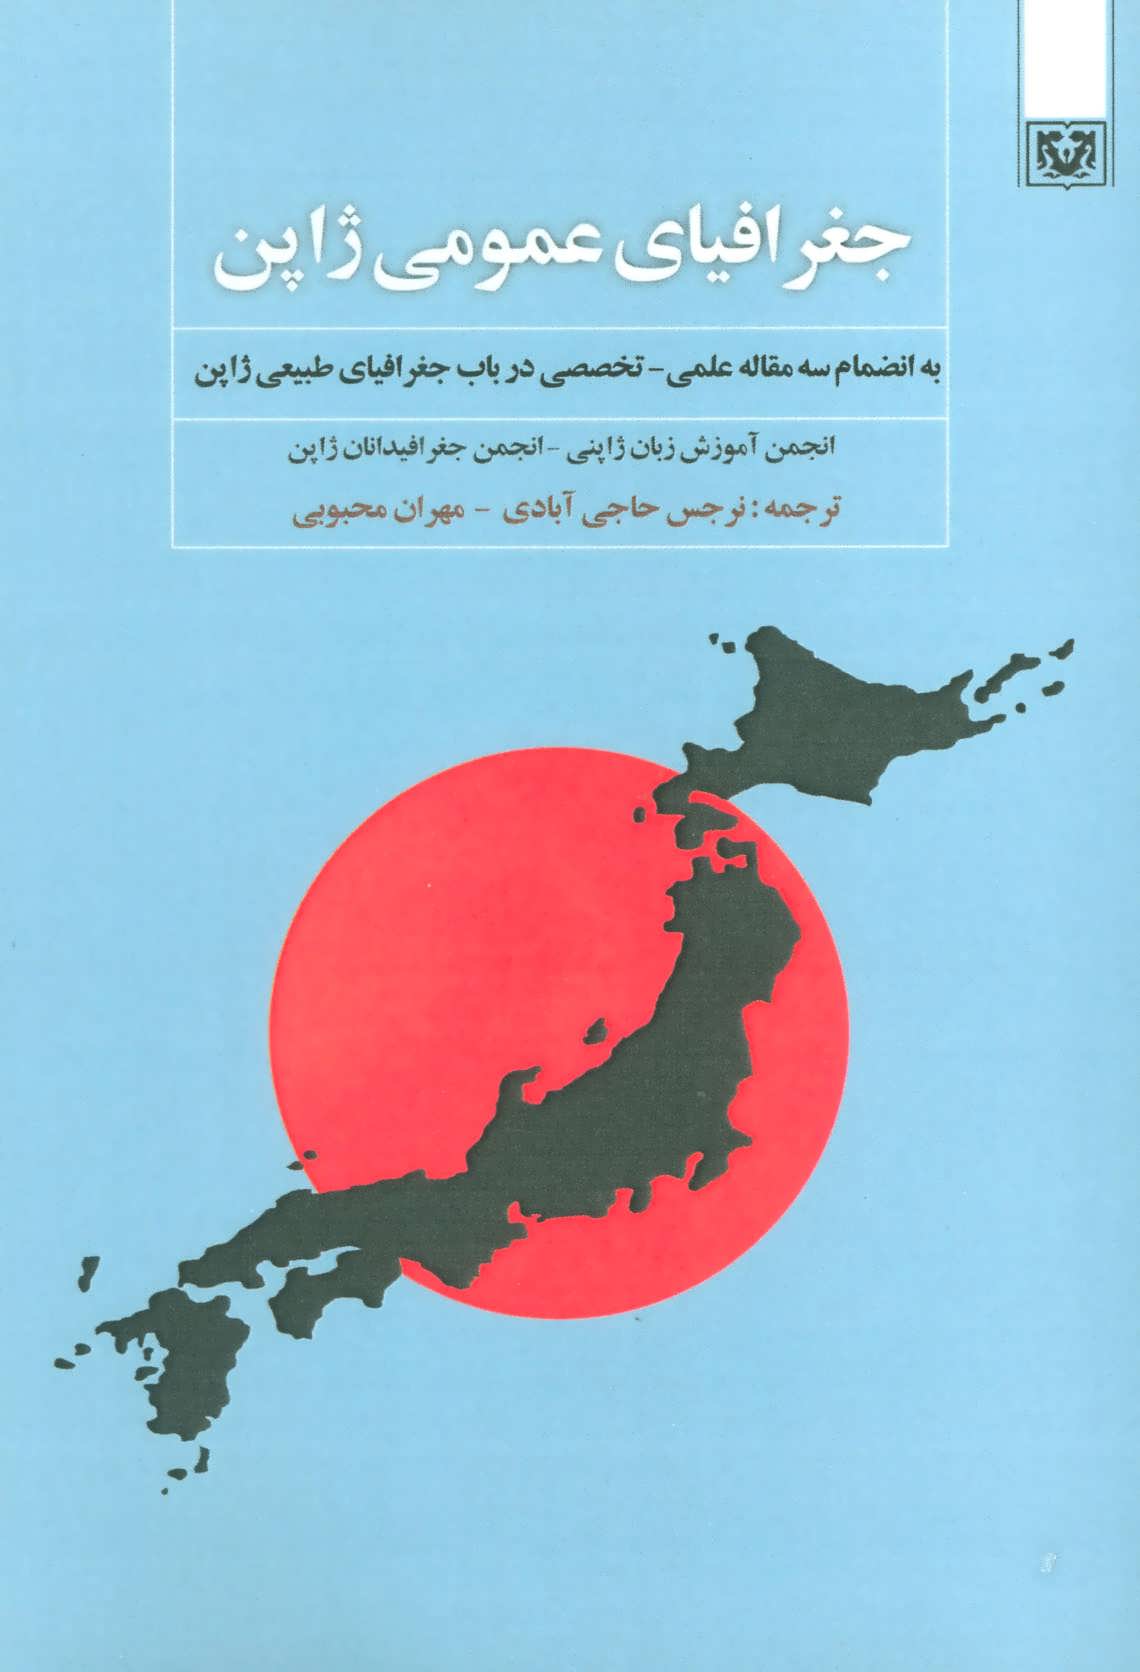 کتاب جغرافیای عمومی ژاپن (به انضمام سه مقاله علمی،تخصصی در باب جغرافیای طبیعی ژاپن)